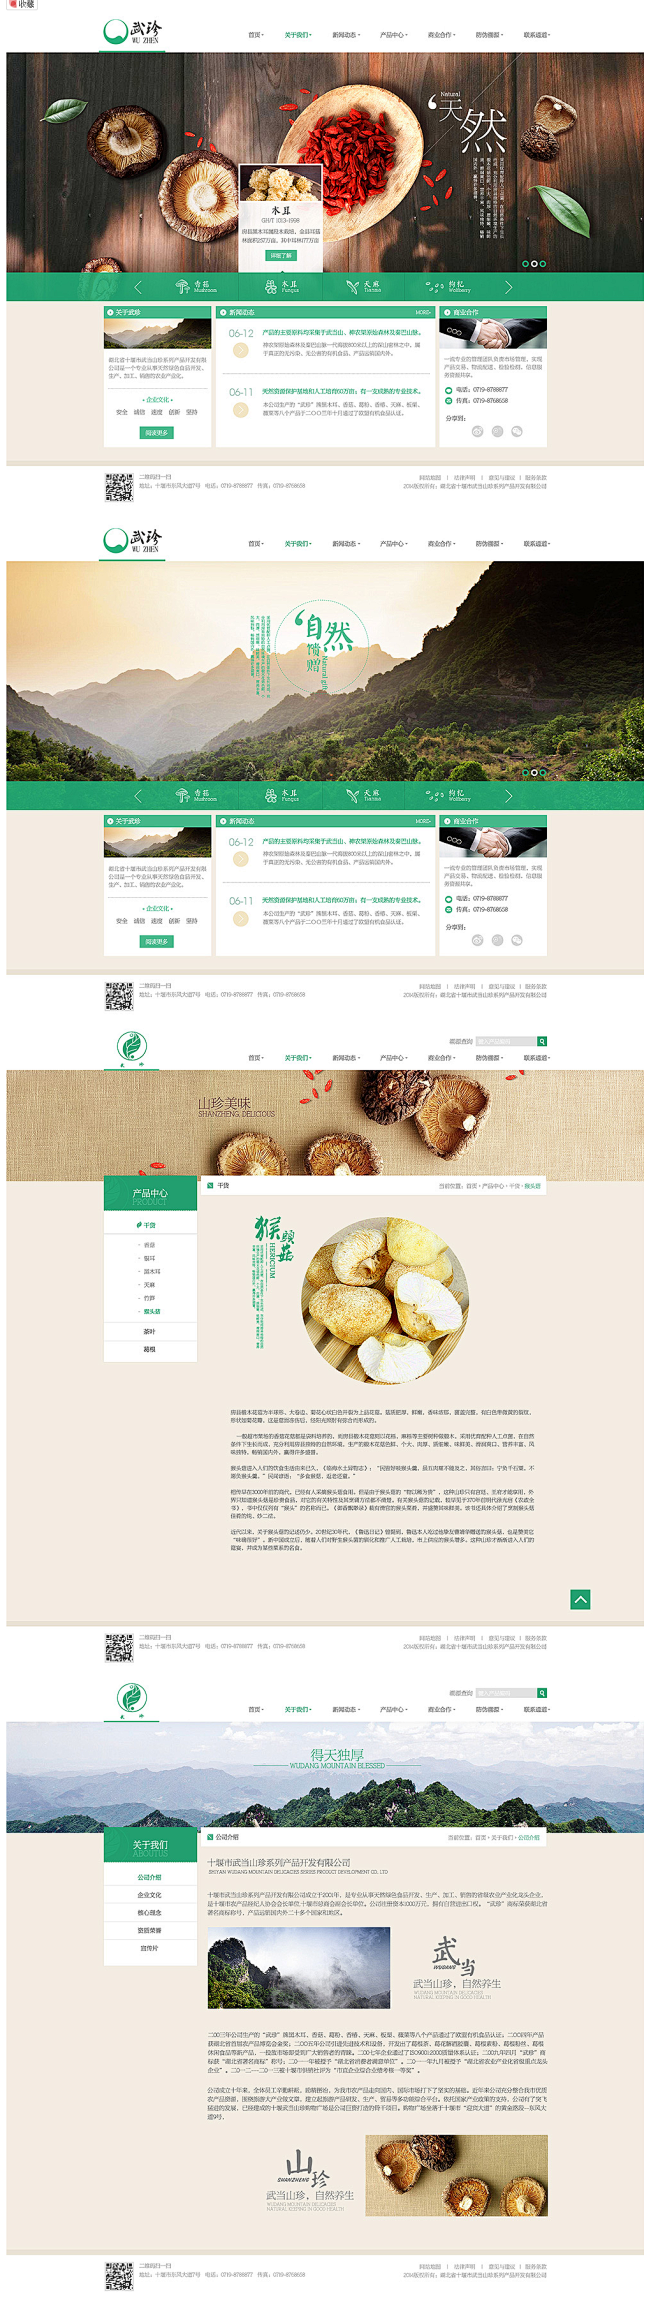 企业网站 by Clh杨华 - UE设计...